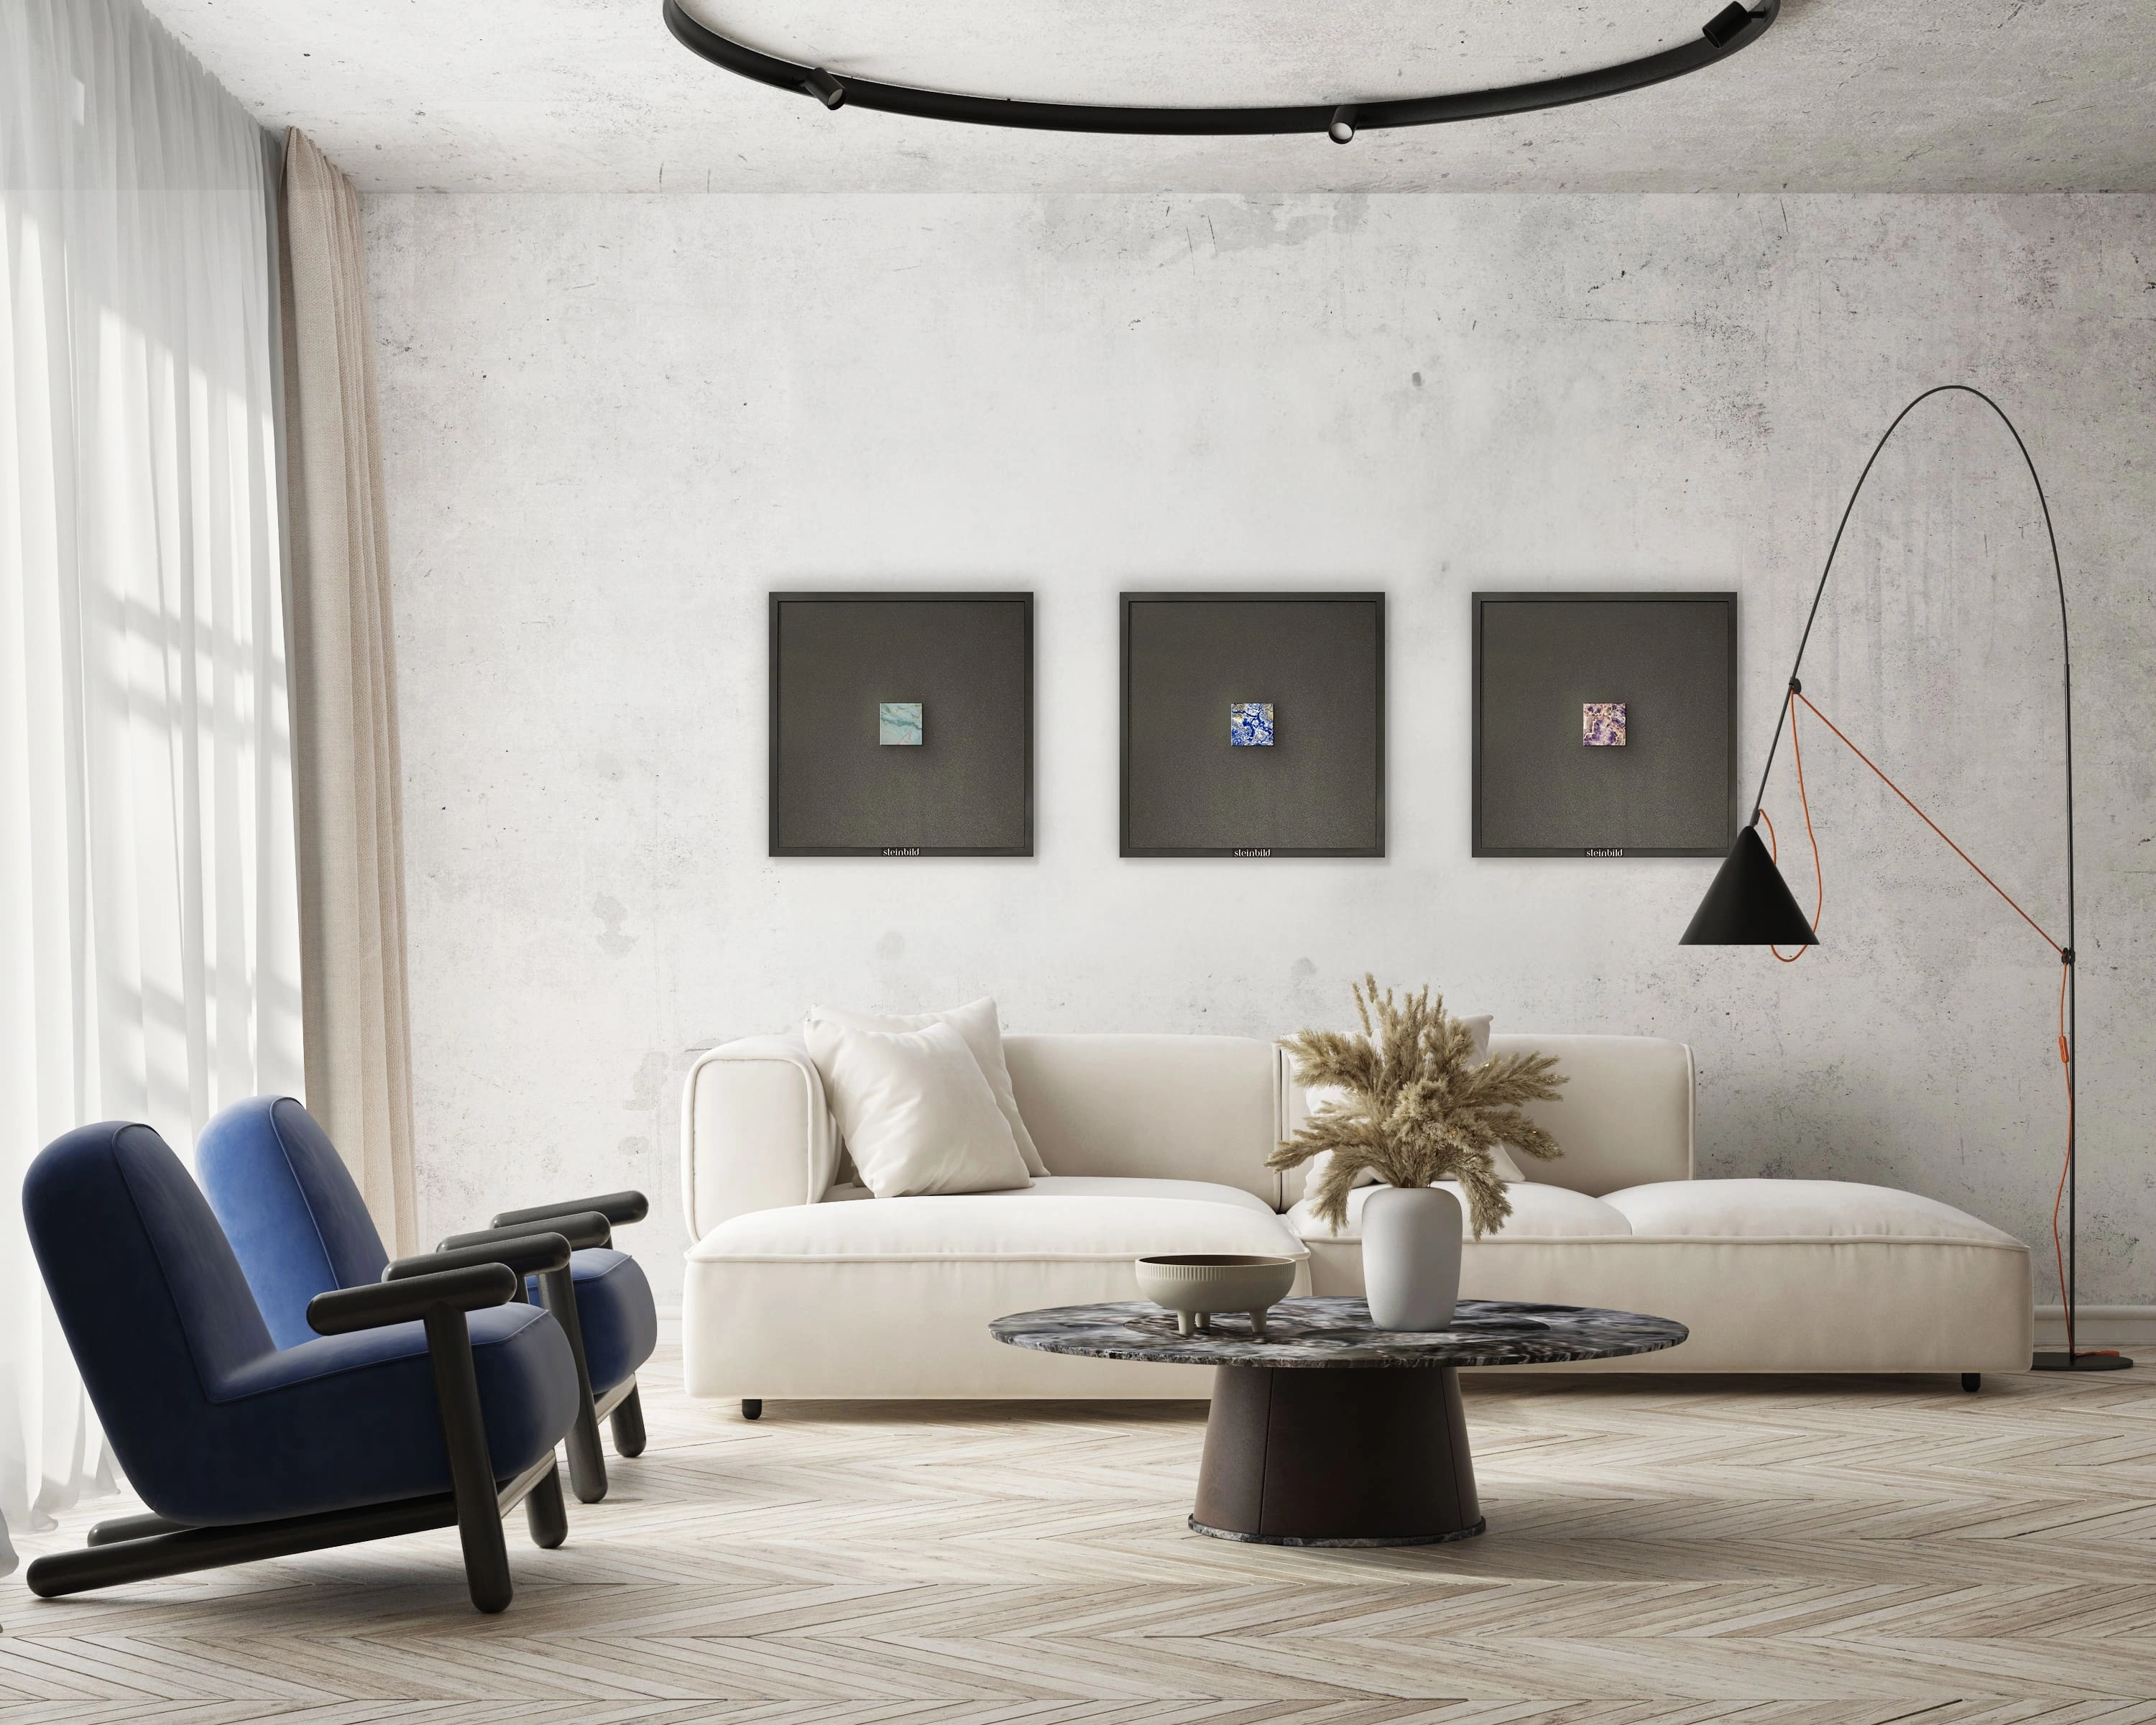 Minimalistisch eingerichtetes, helles Wohnzimmer mit drei Natursteinkunstwerken von STEINBILD an der Wand